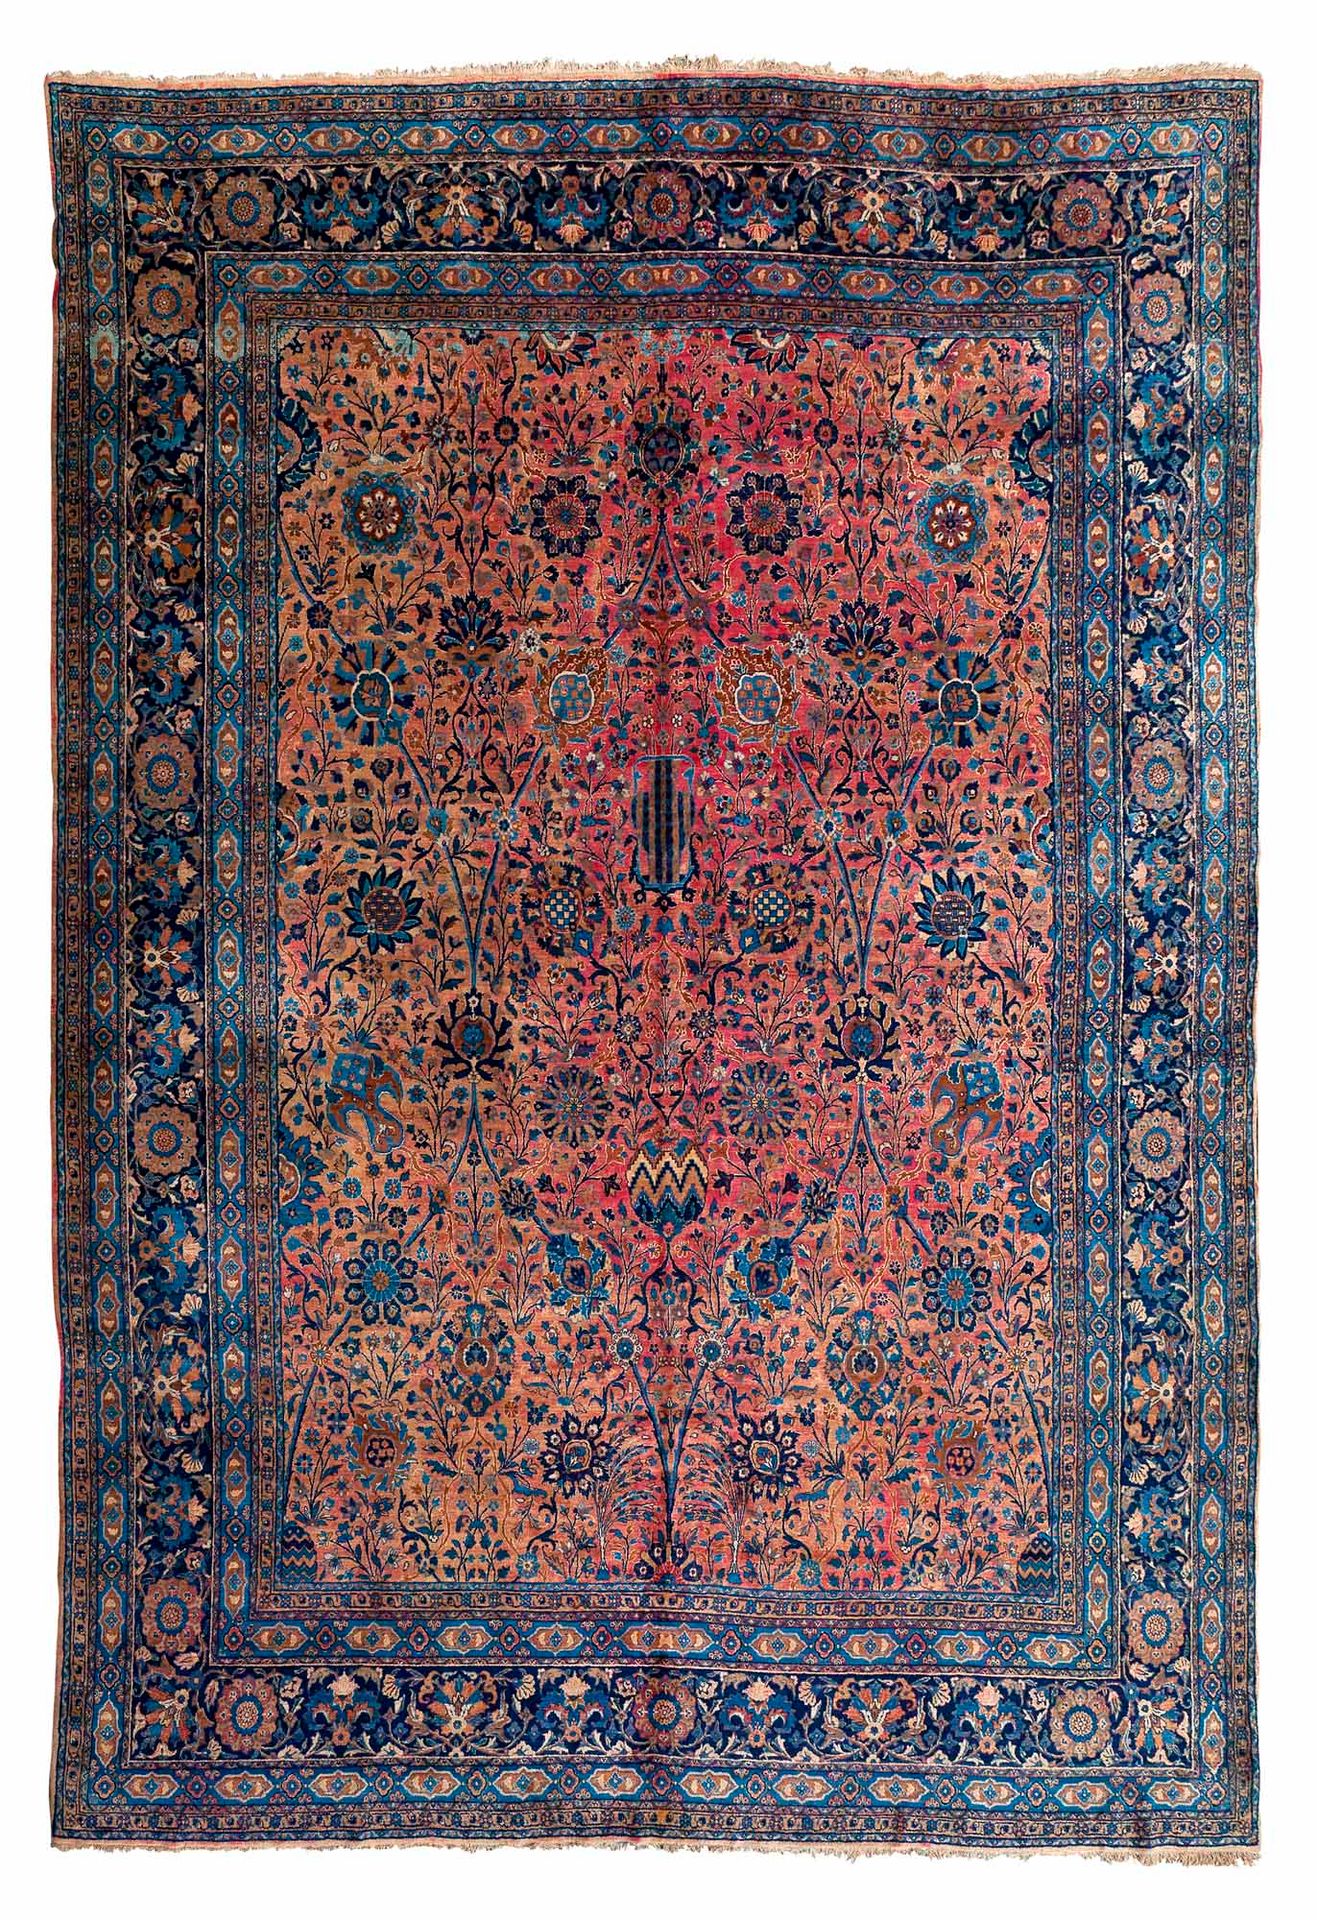 Null Importante alfombra KIRMAN (Persia), primer tercio del siglo XX

Dimensione&hellip;